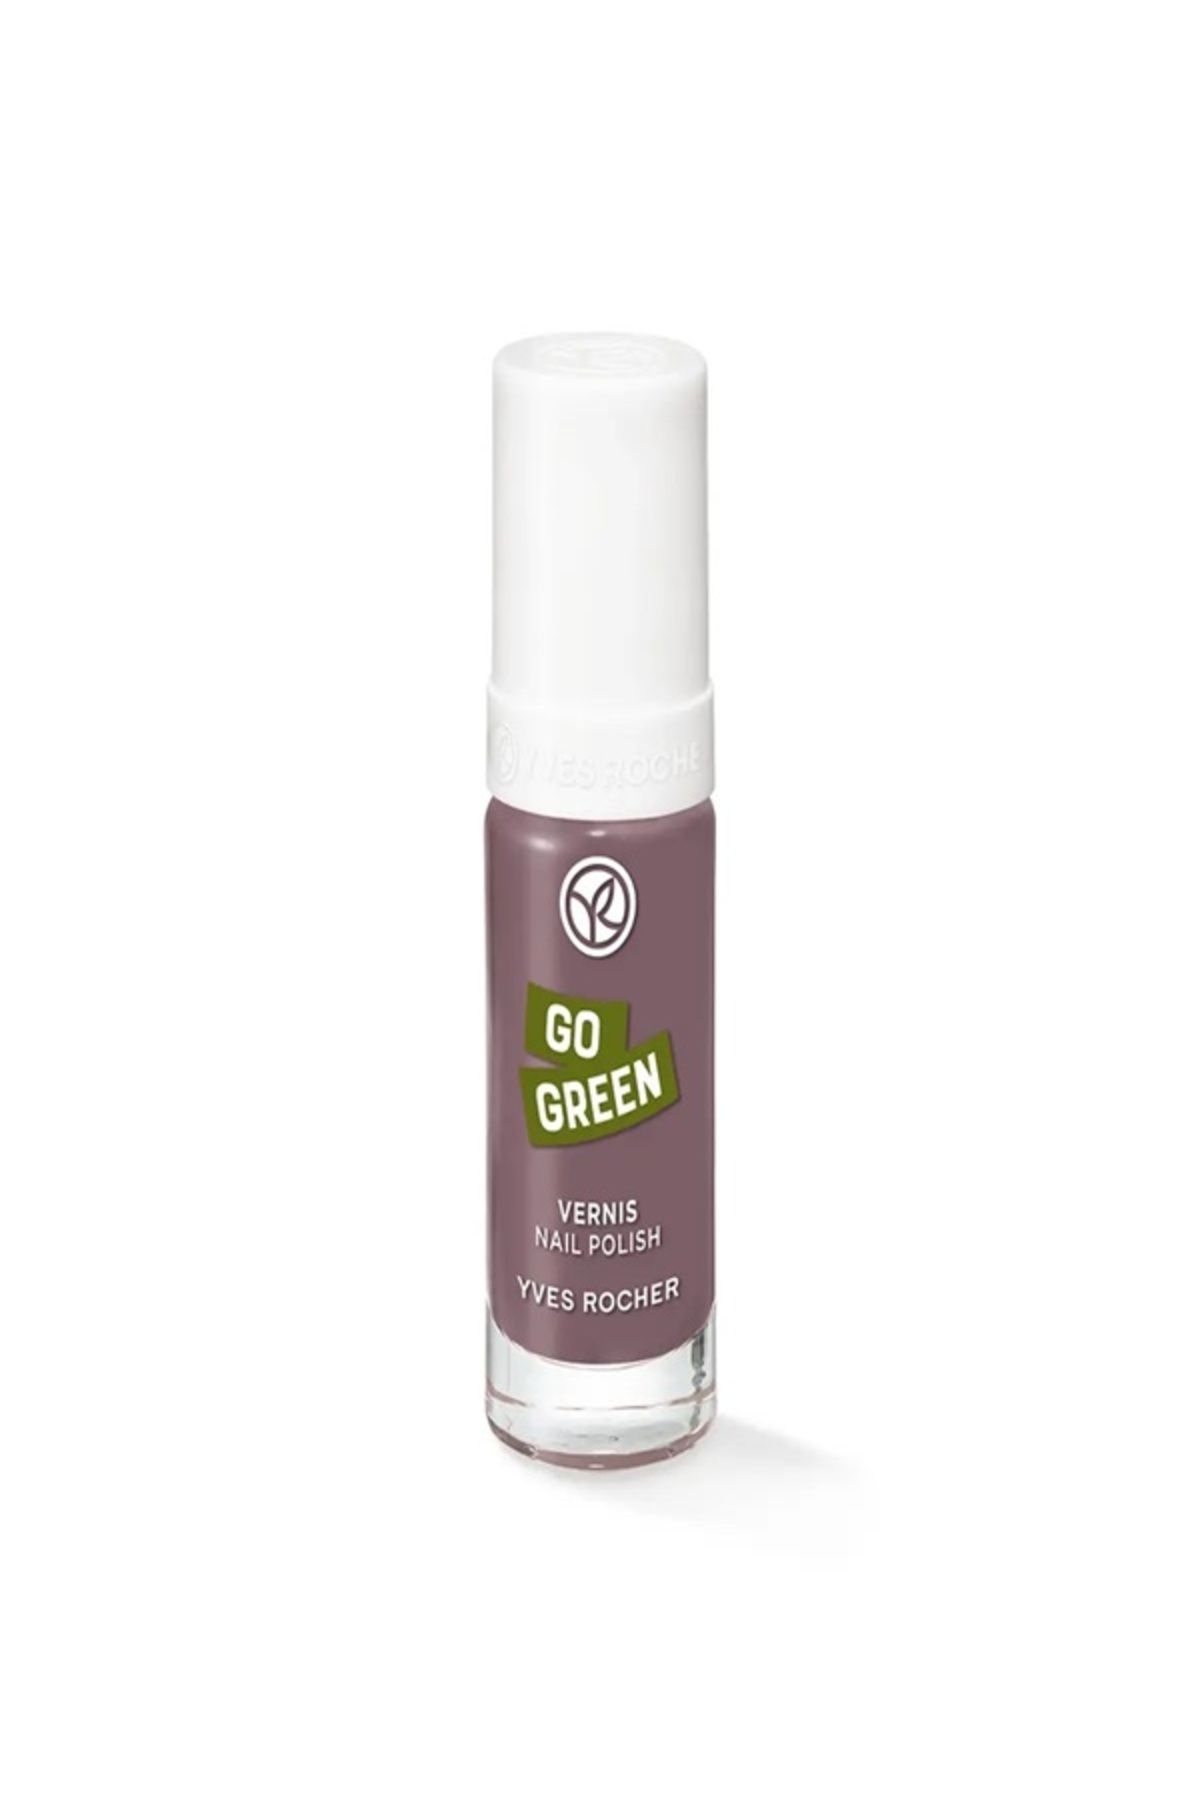 Yves Rocher Go Green Oje Işıltılı ve canlı renkler, sağlıklı tırnaklar! 5 ml